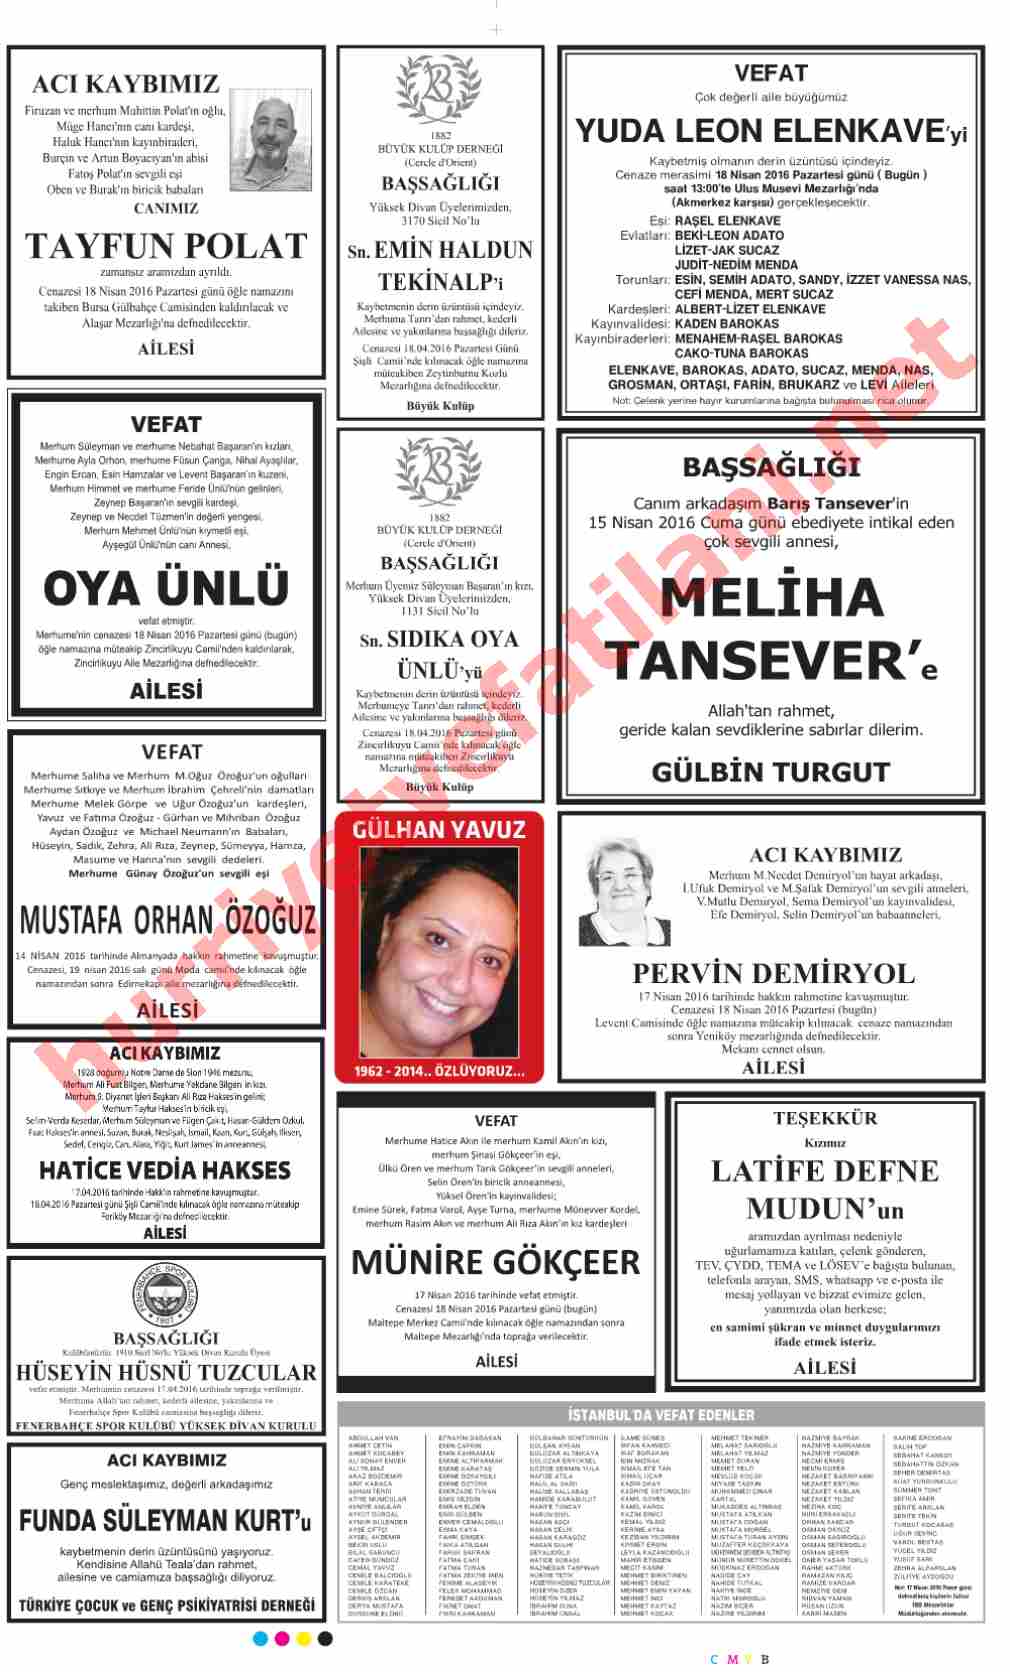 18 Nisan 2016 Hürriyet Gazetesinde Yayınlanmış Vefat İlanları Sayfası